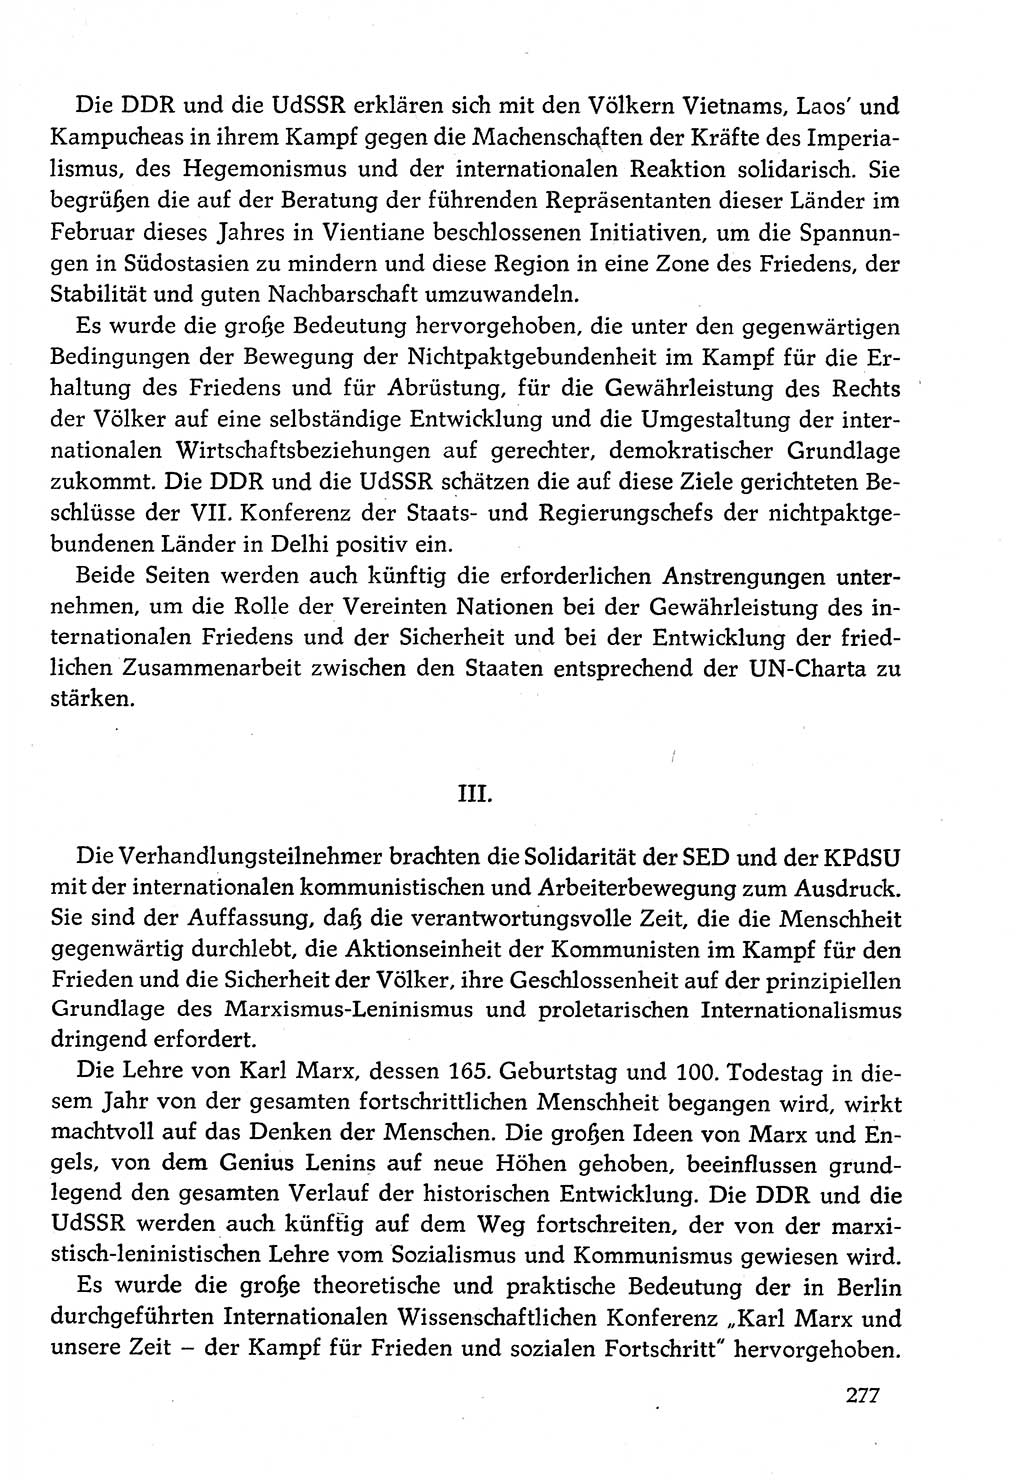 Dokumente der Sozialistischen Einheitspartei Deutschlands (SED) [Deutsche Demokratische Republik (DDR)] 1982-1983, Seite 277 (Dok. SED DDR 1982-1983, S. 277)